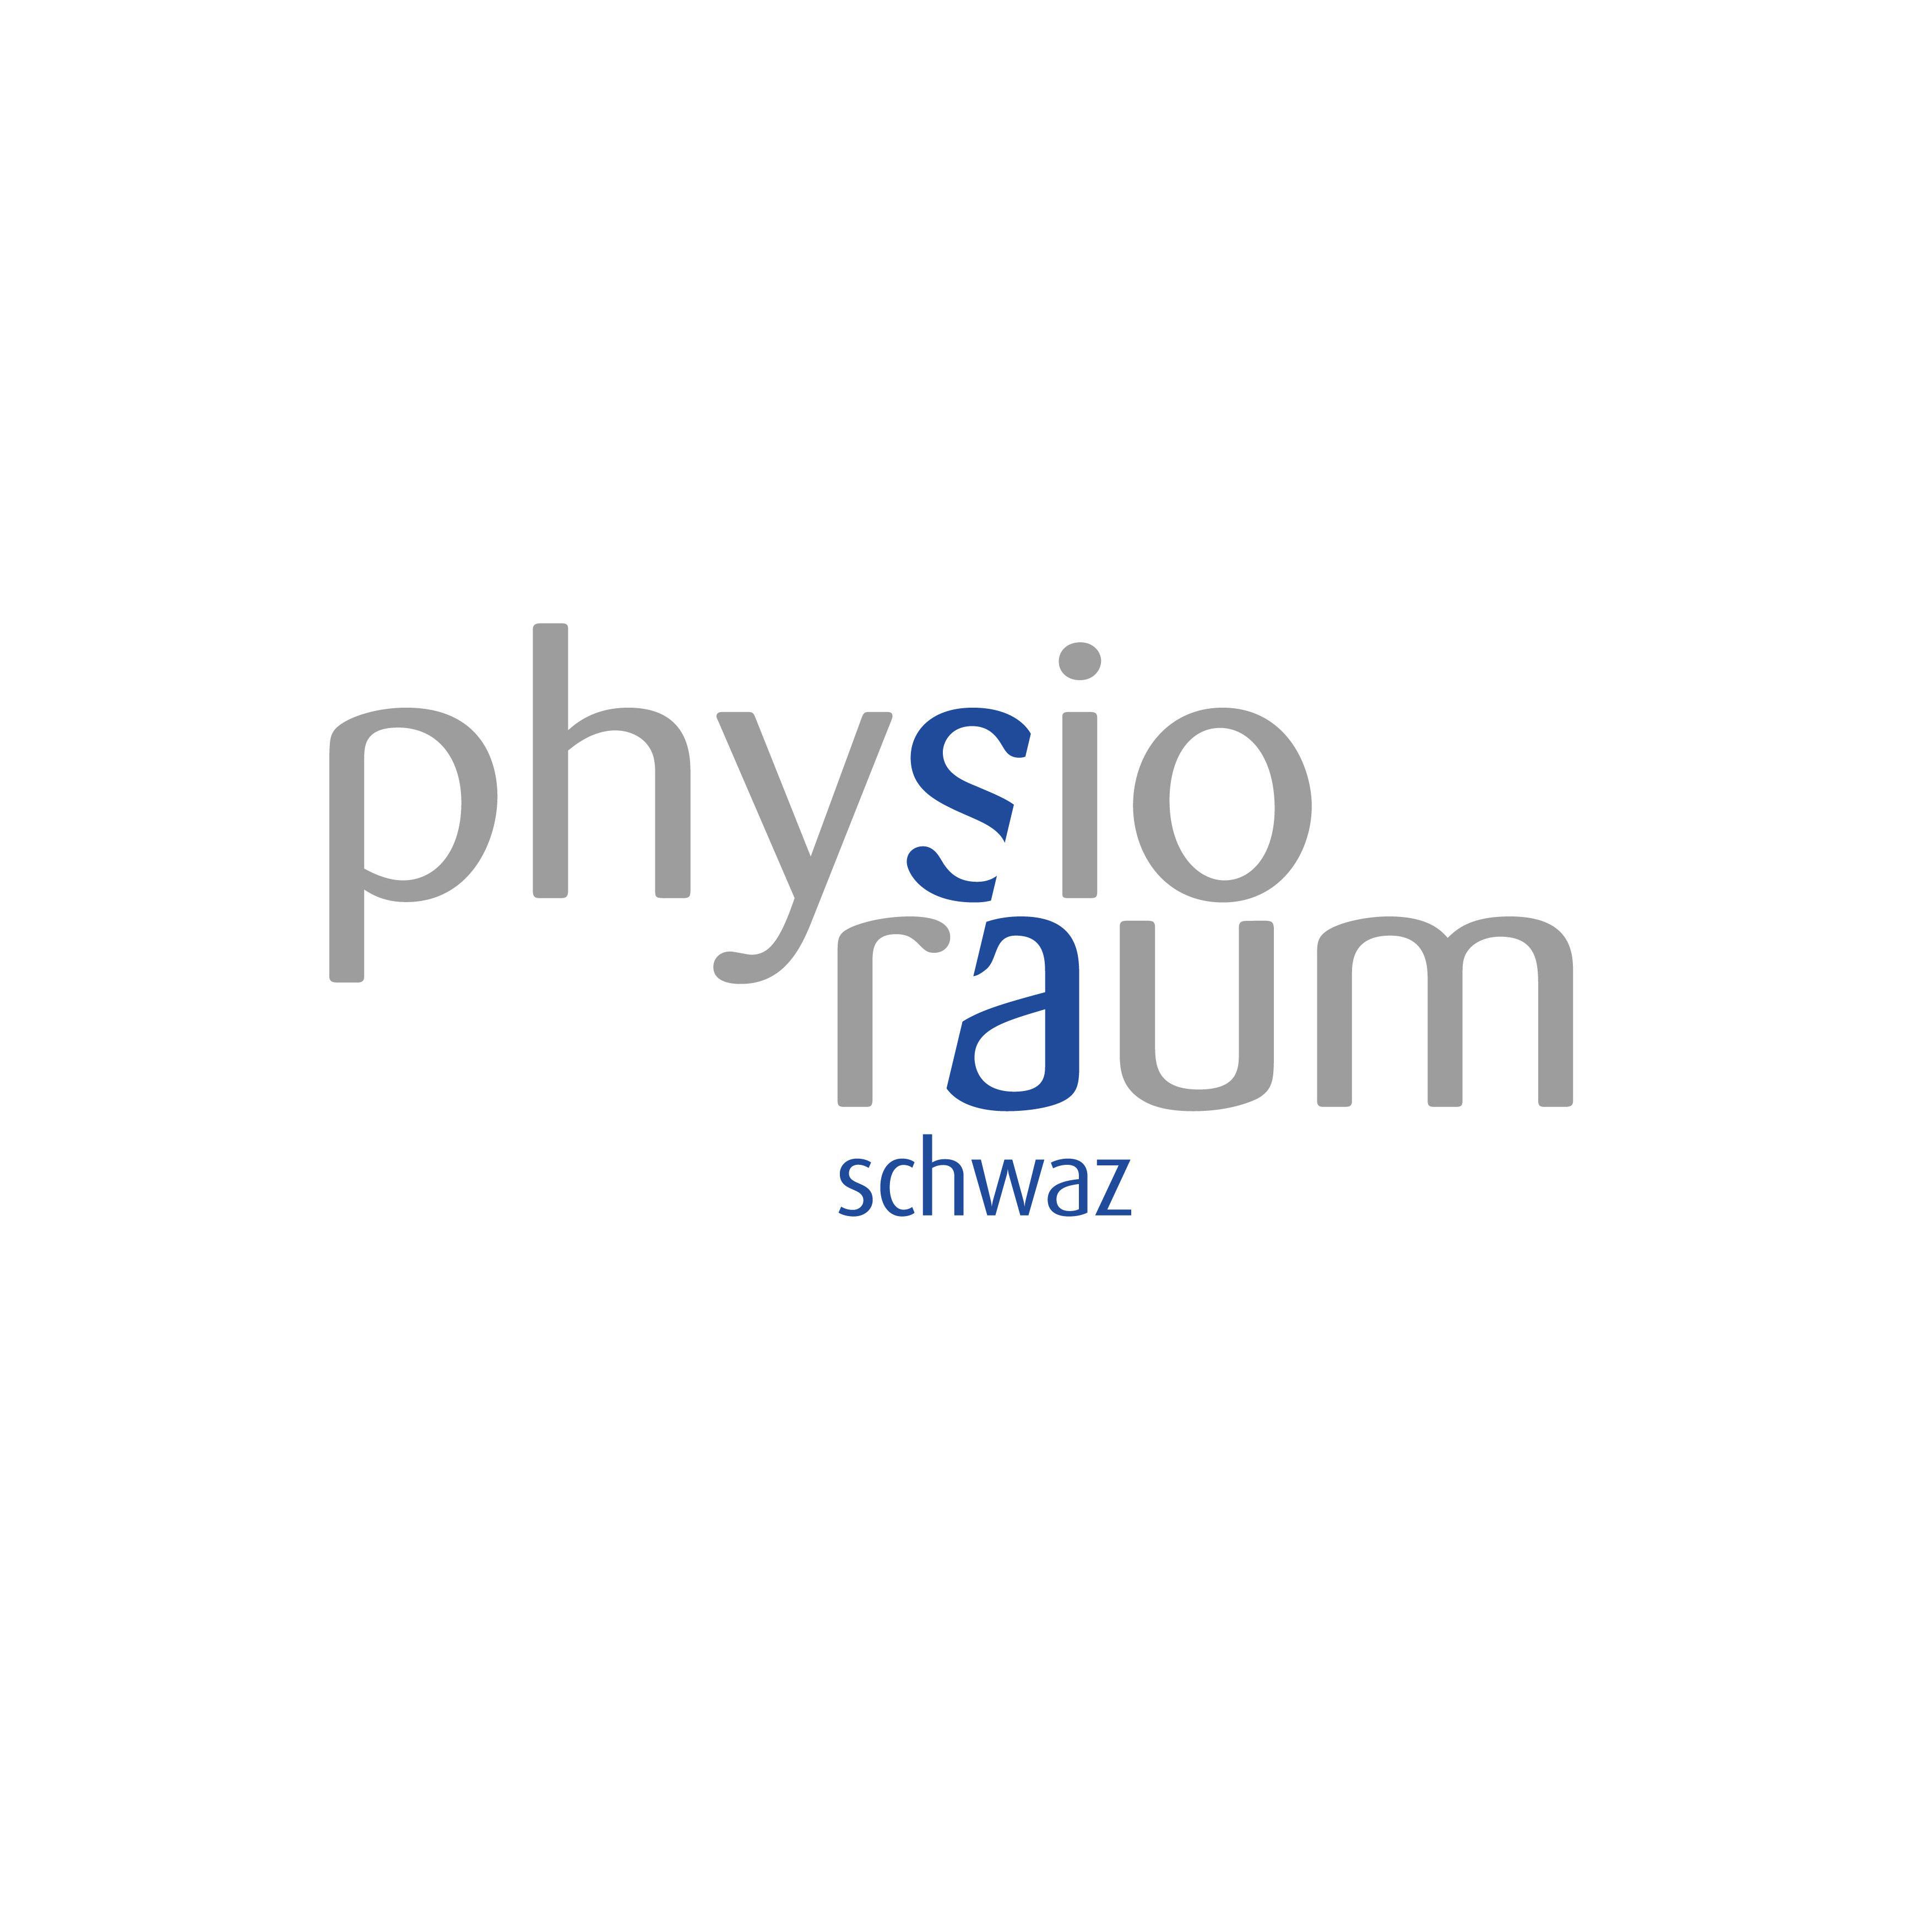 Physioraum Schwaz Logo